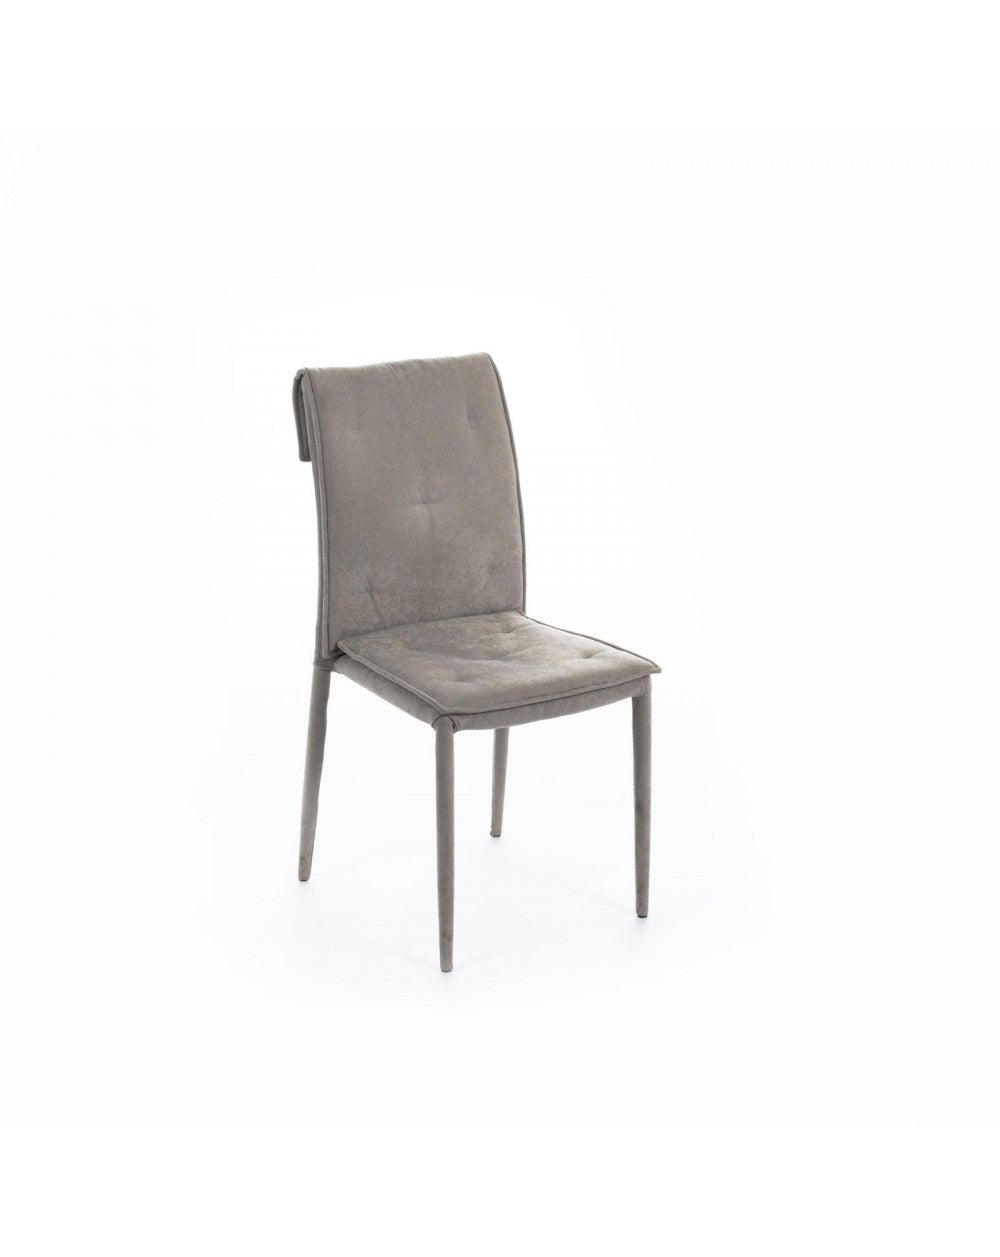 Sedia In Tessuto, Set 4, Brand: Stones, Colore: Grigio, Materiale: Seduta: Tessuto  Lavabile, Schienale: Tessuto Lavabile, Gambe / Struttura: Metallo